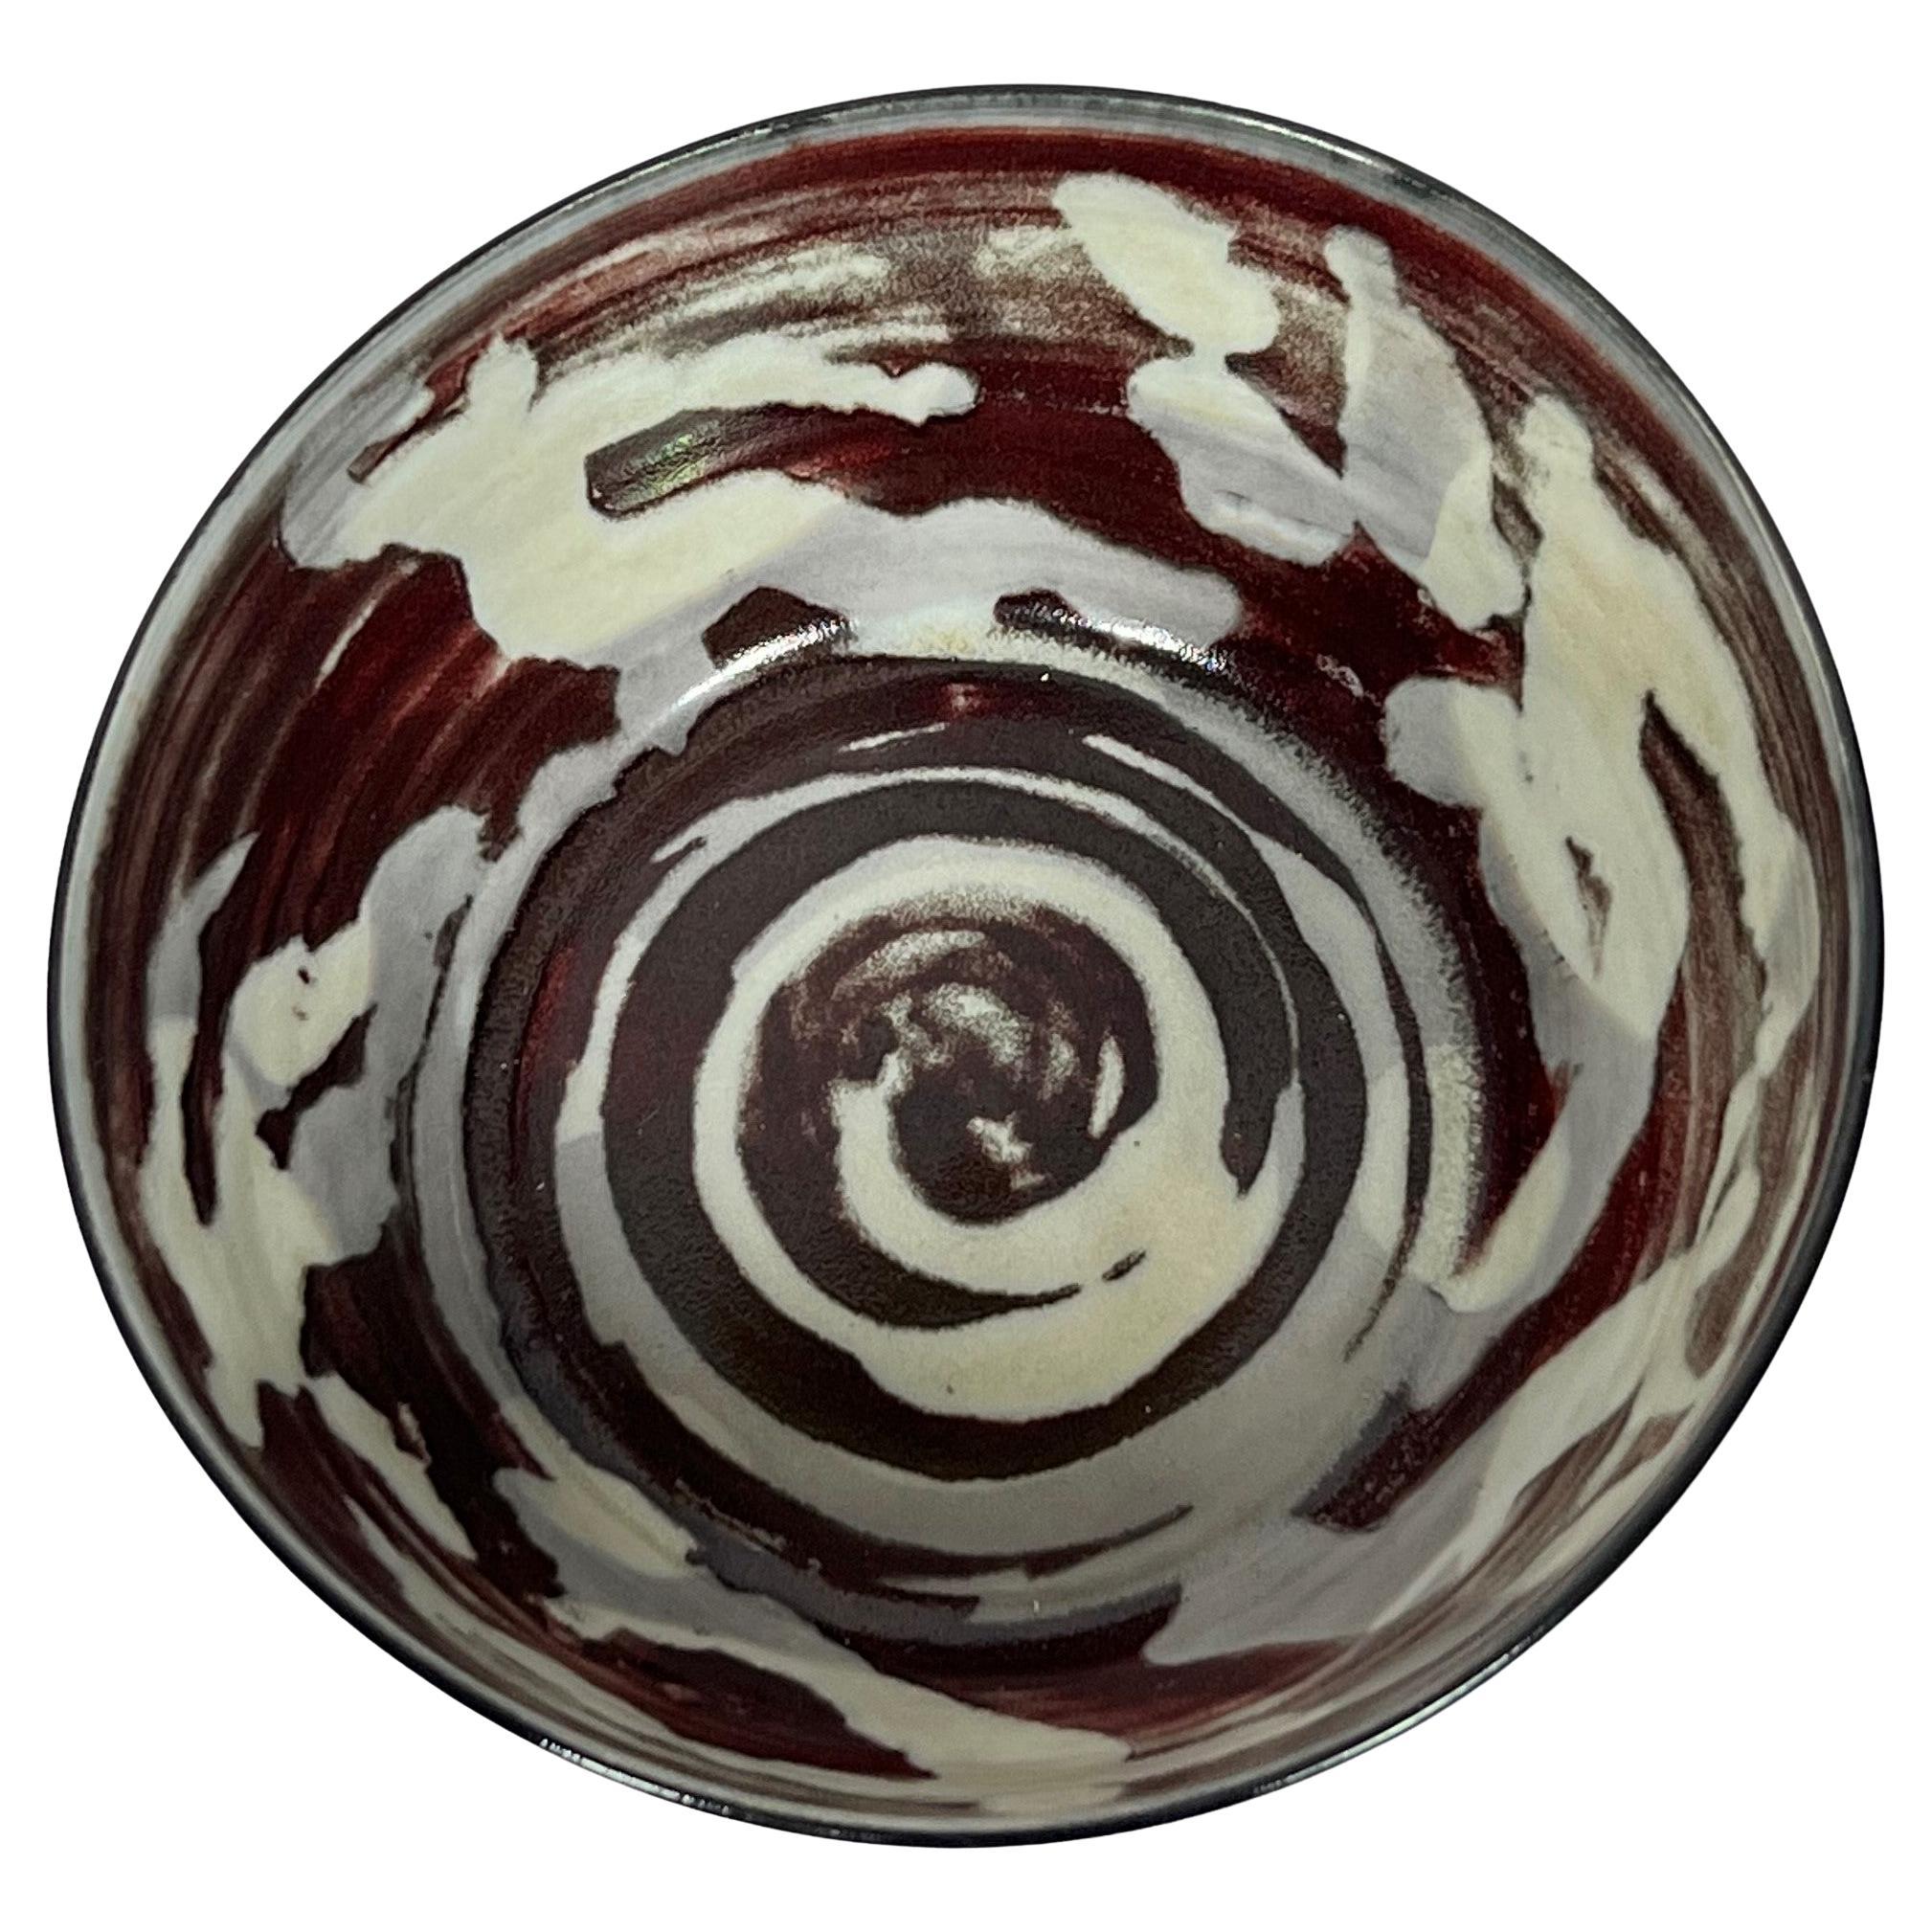 Carl Harry Stalhane Designhuset Reduction Red Figural Porcelain Bowl, 1980's For Sale